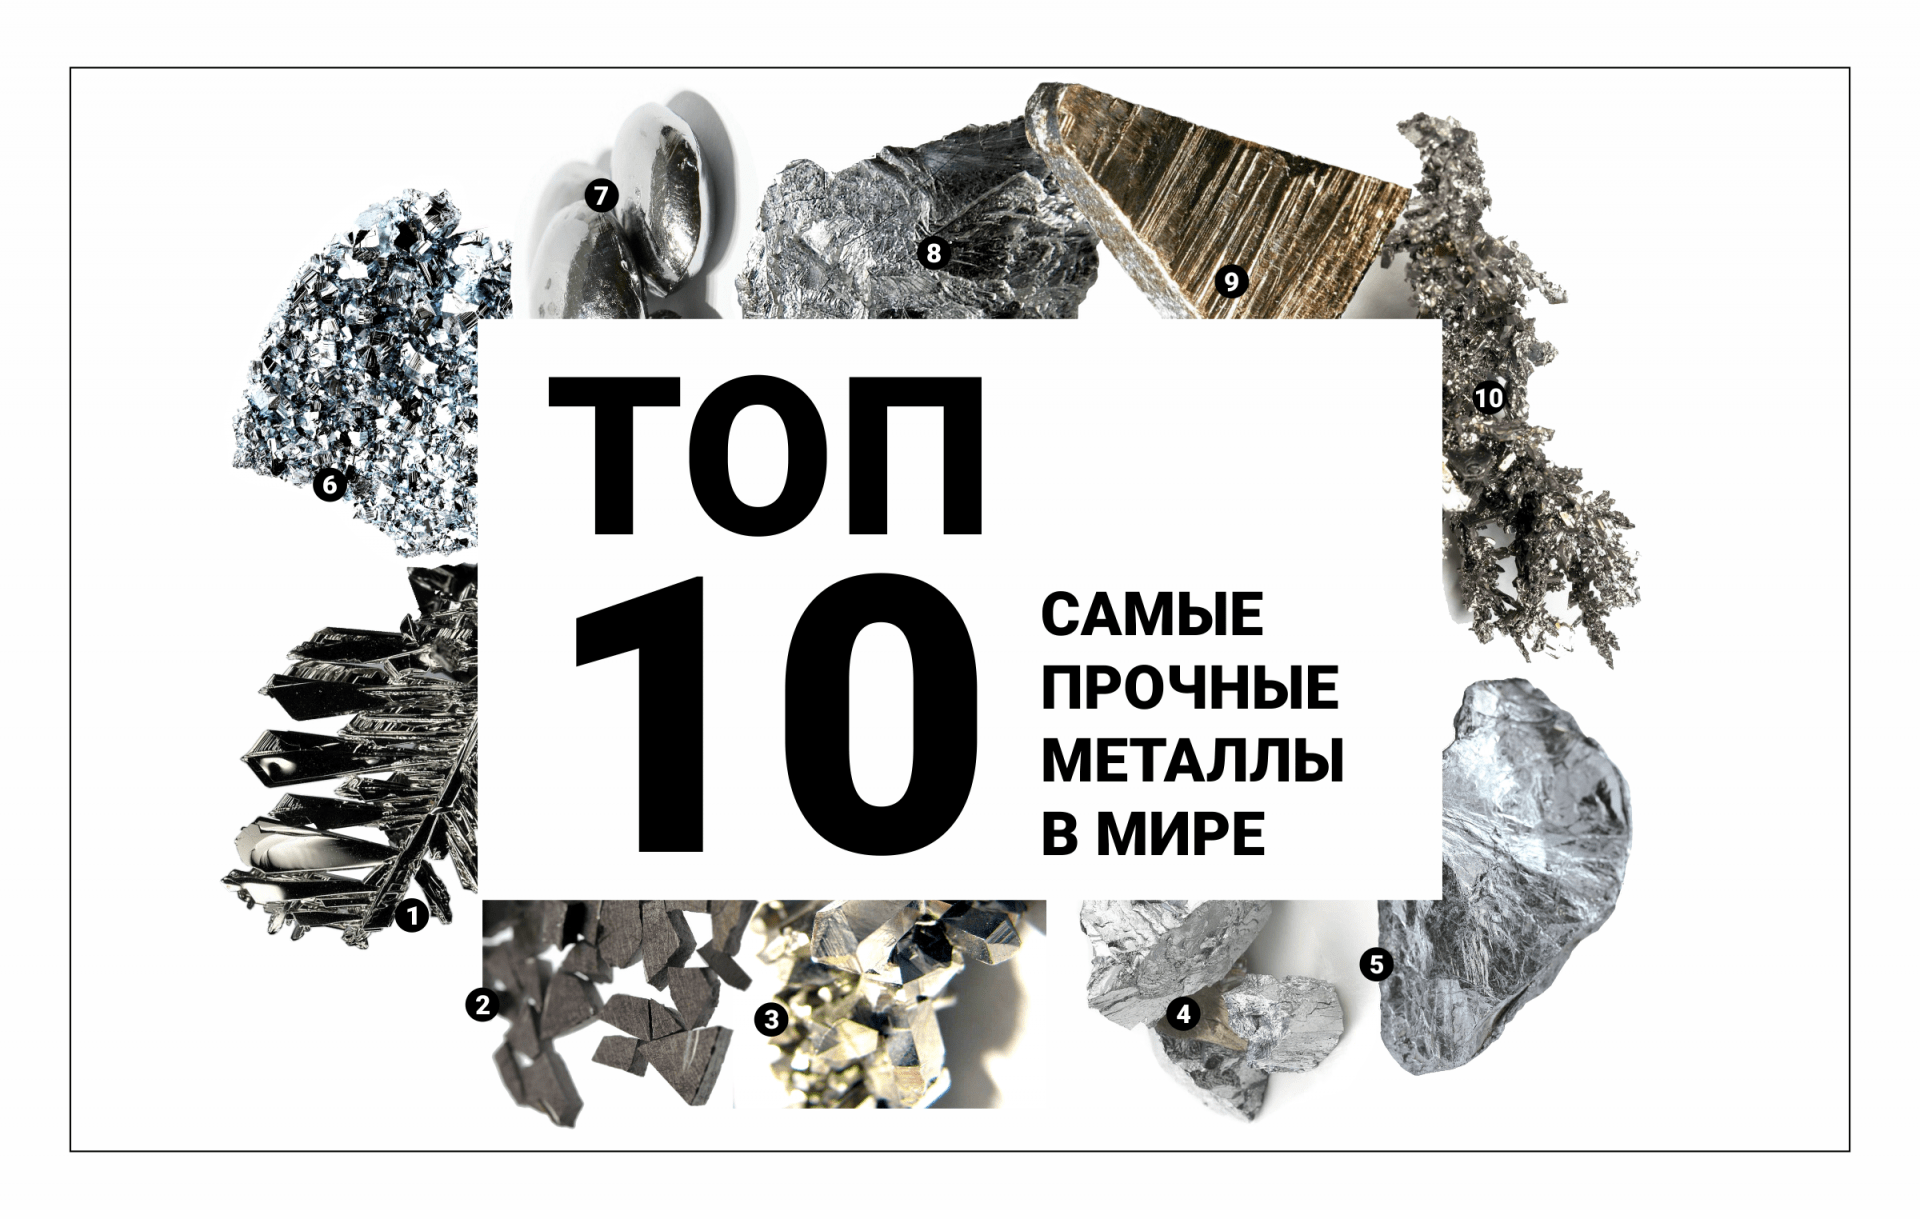 Самый прончный метал в мире. Саиый прочный метал в мтре. Самый твёрдый металл в мире. Топ самых прочных металлов в мире.